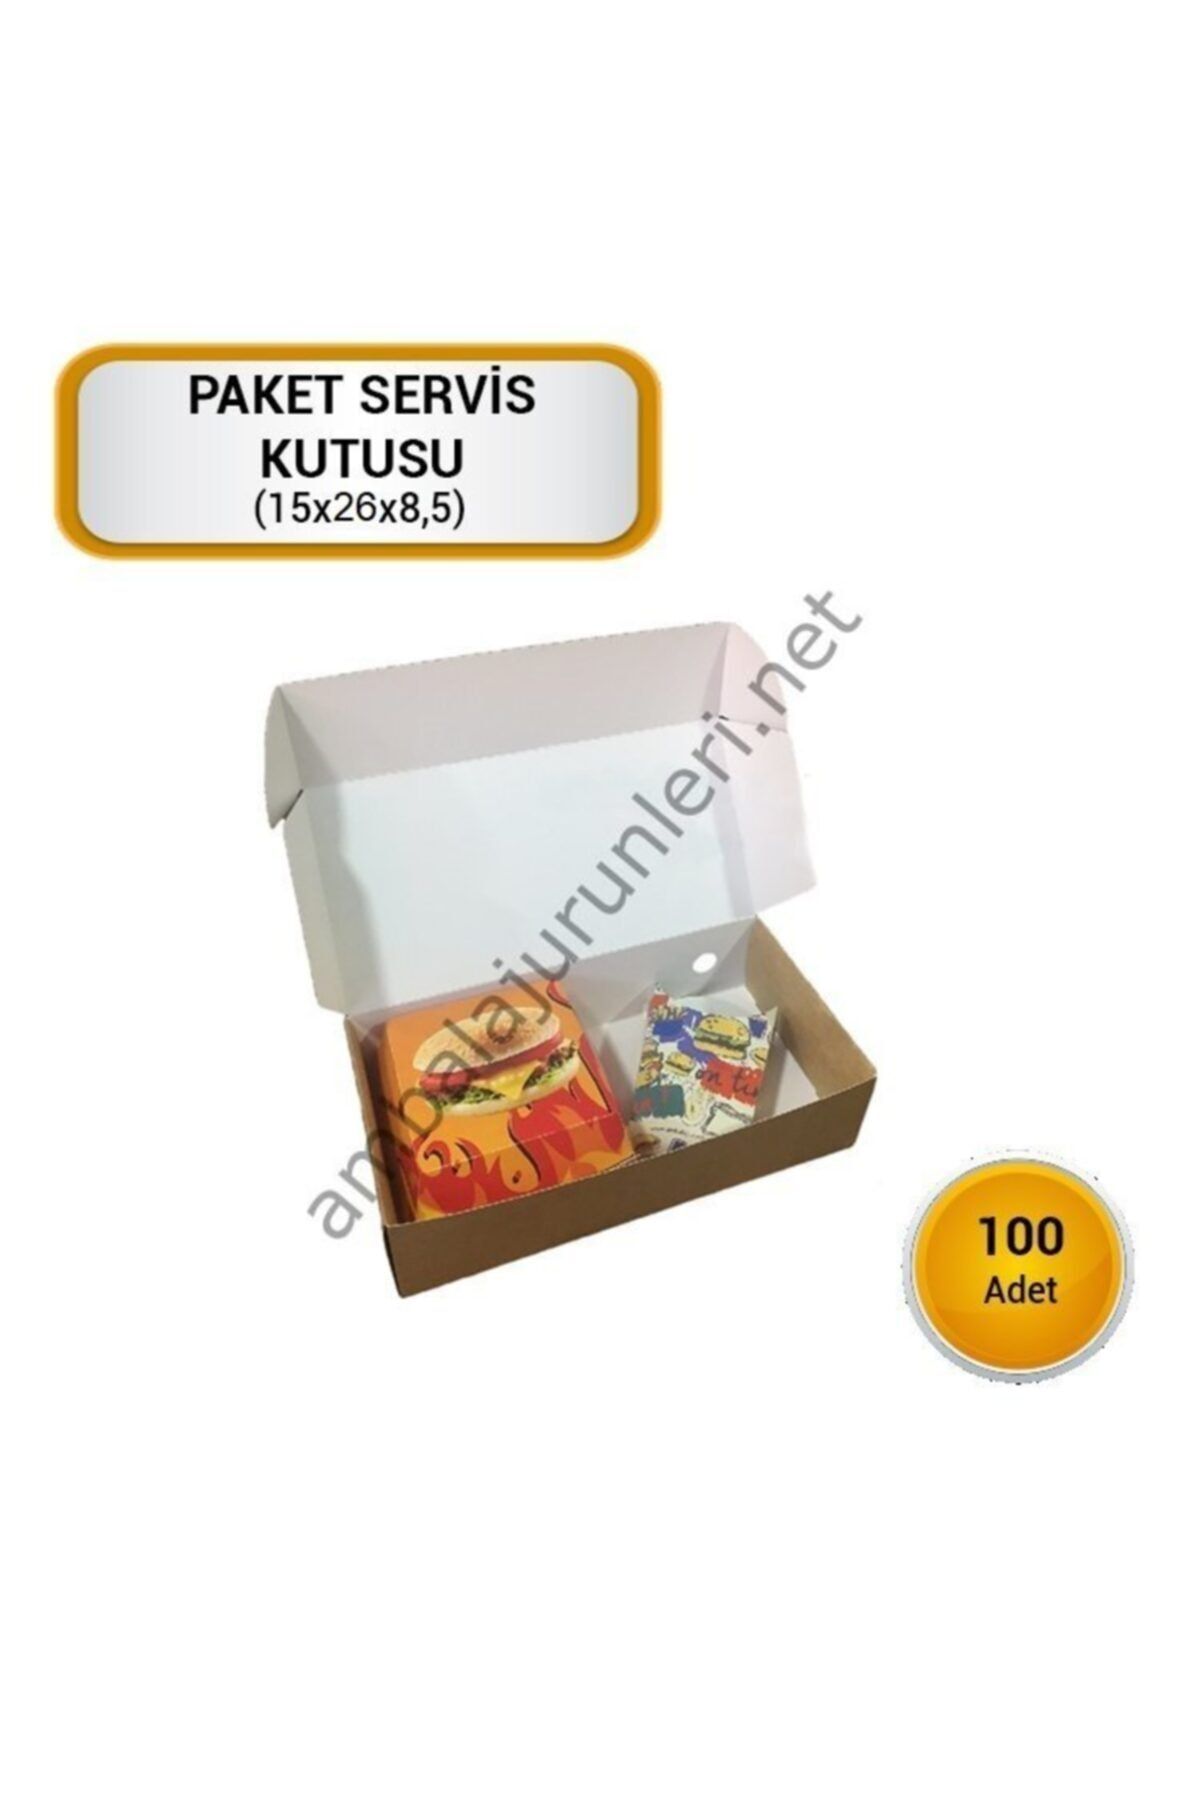 GİZPAK Fast Food Paket Servis Kutusu 26x15x7.5cm